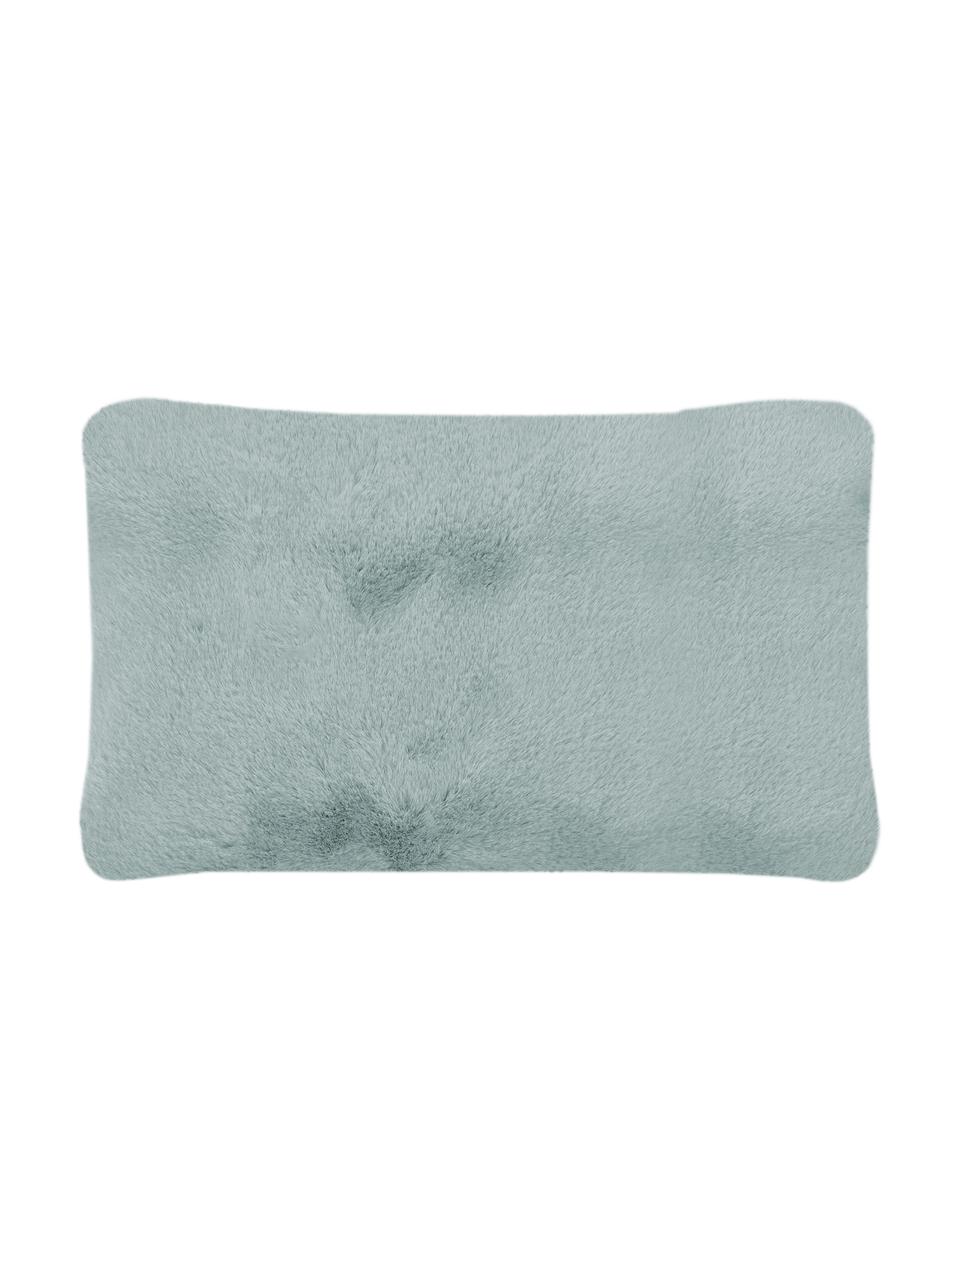 Flauschige Kunstfell-Kissenhülle Mette in Salbeigrün, glatt, Vorderseite: 100% Polyester, Rückseite: 100% Polyester, Grün, 30 x 50 cm